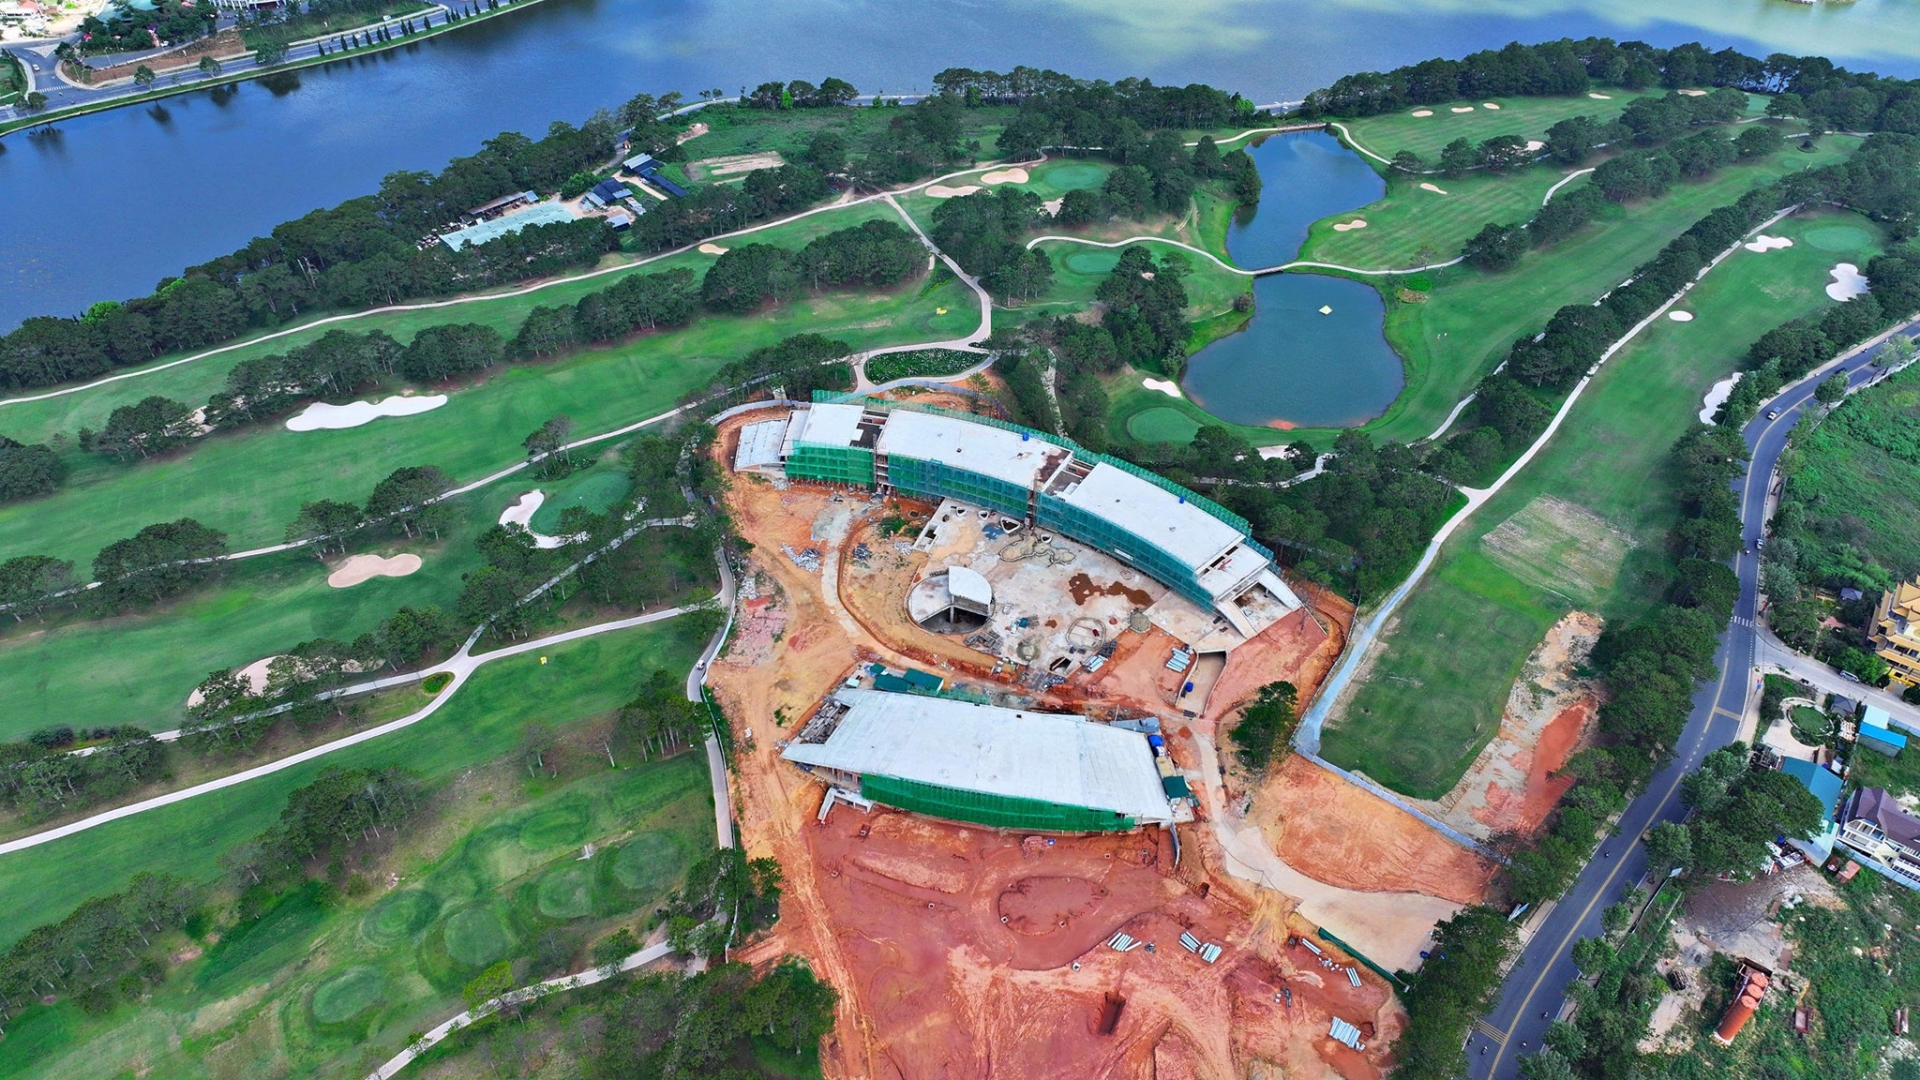 
Hiện trạng công trình sai phép thuộc Tòa nhà câu lạc bộ Golf tại Sân Golf Đà Lạt